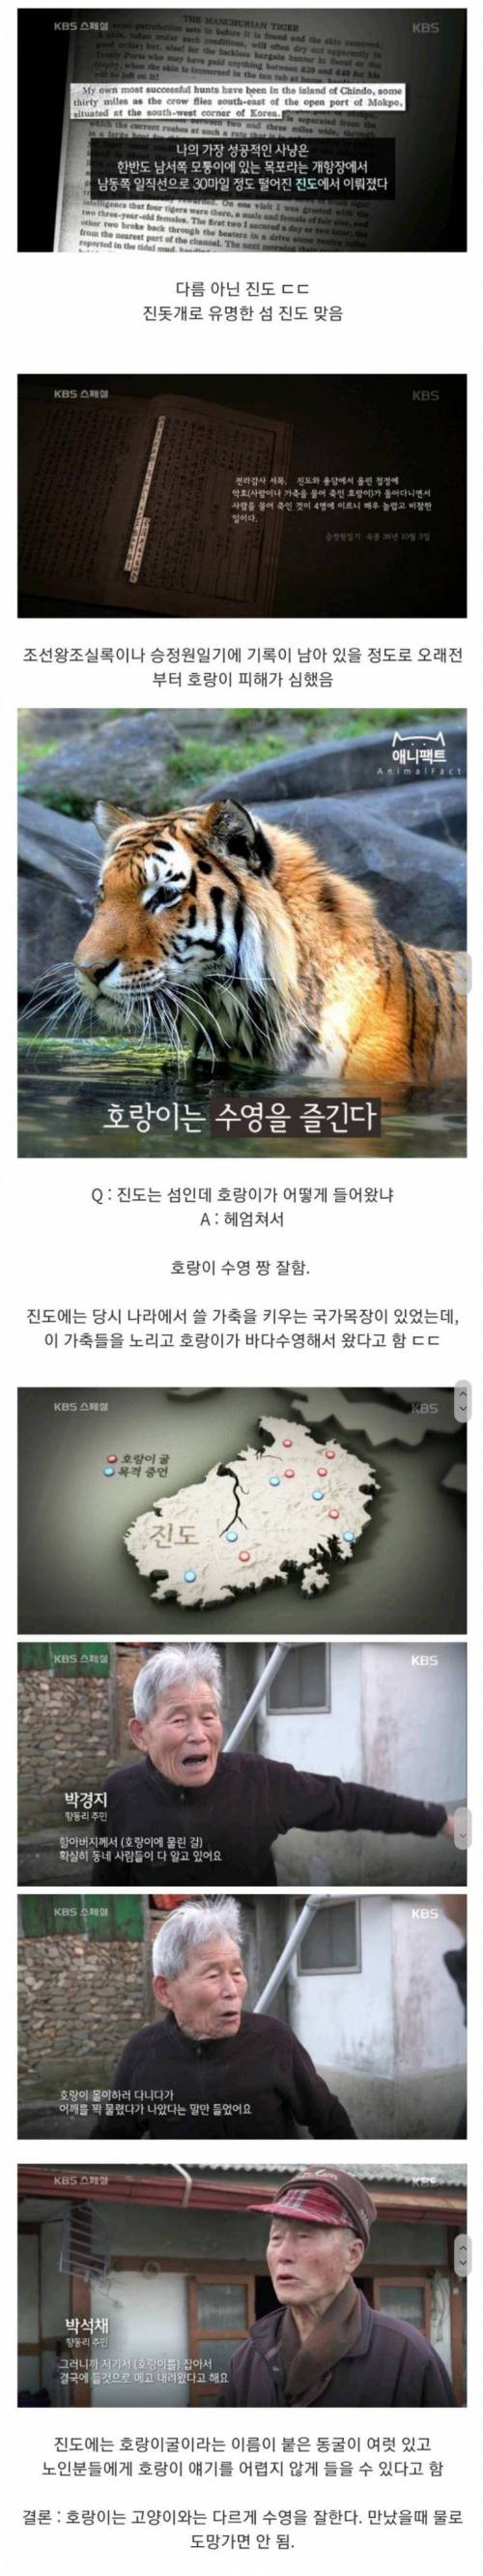 조선시대에 의외로 호랑이 피해가 많았던 곳.jpg